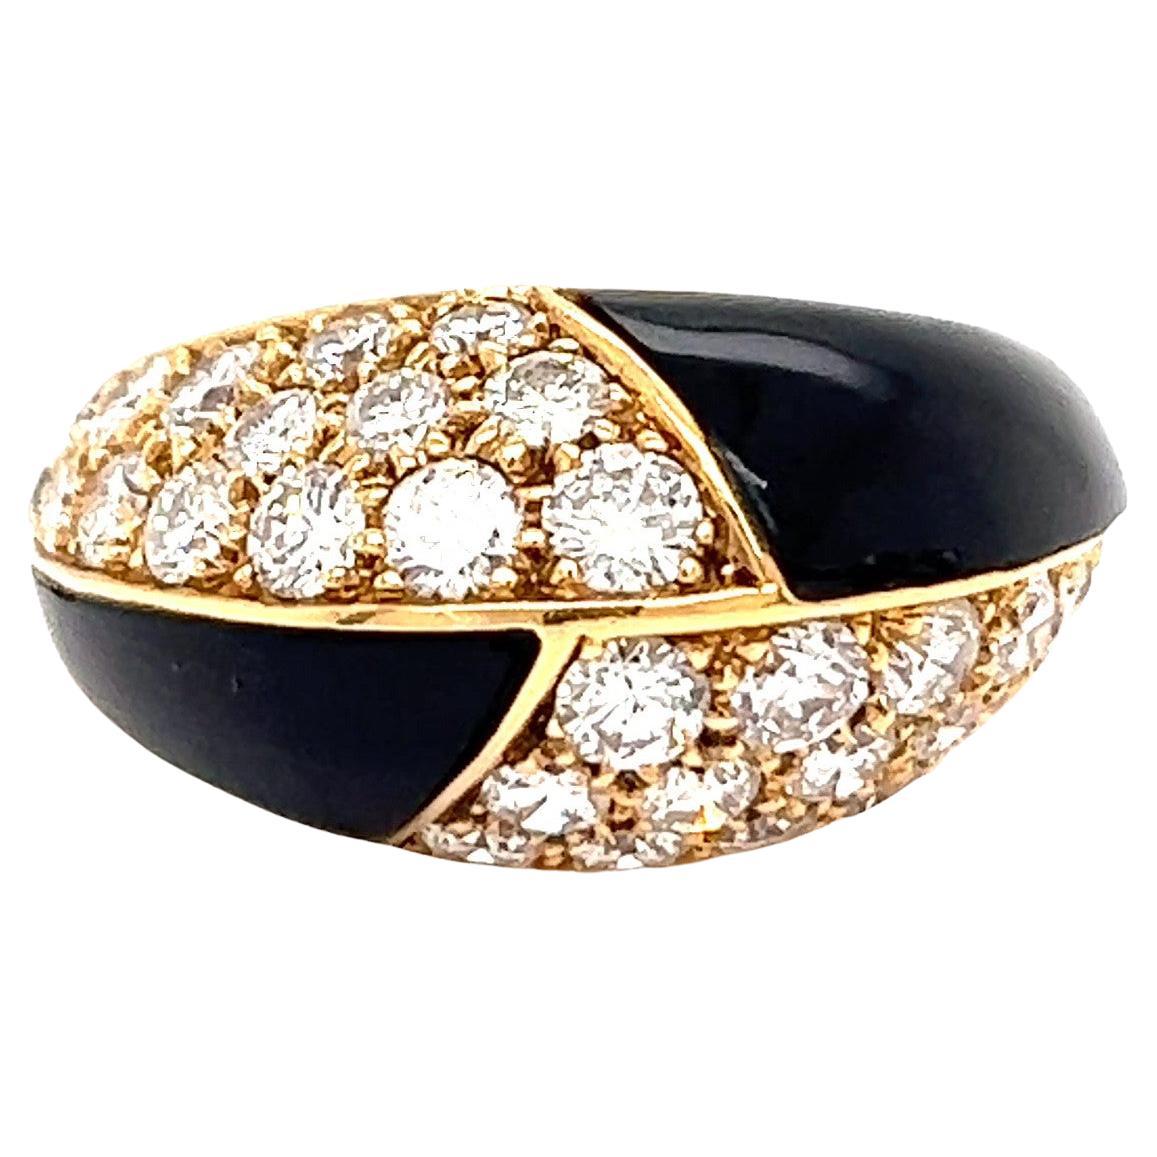 Vintage Mauboussin Paris 2.90 Carat Brilliant Cut Diamonds Onyx 18K Gold Ring